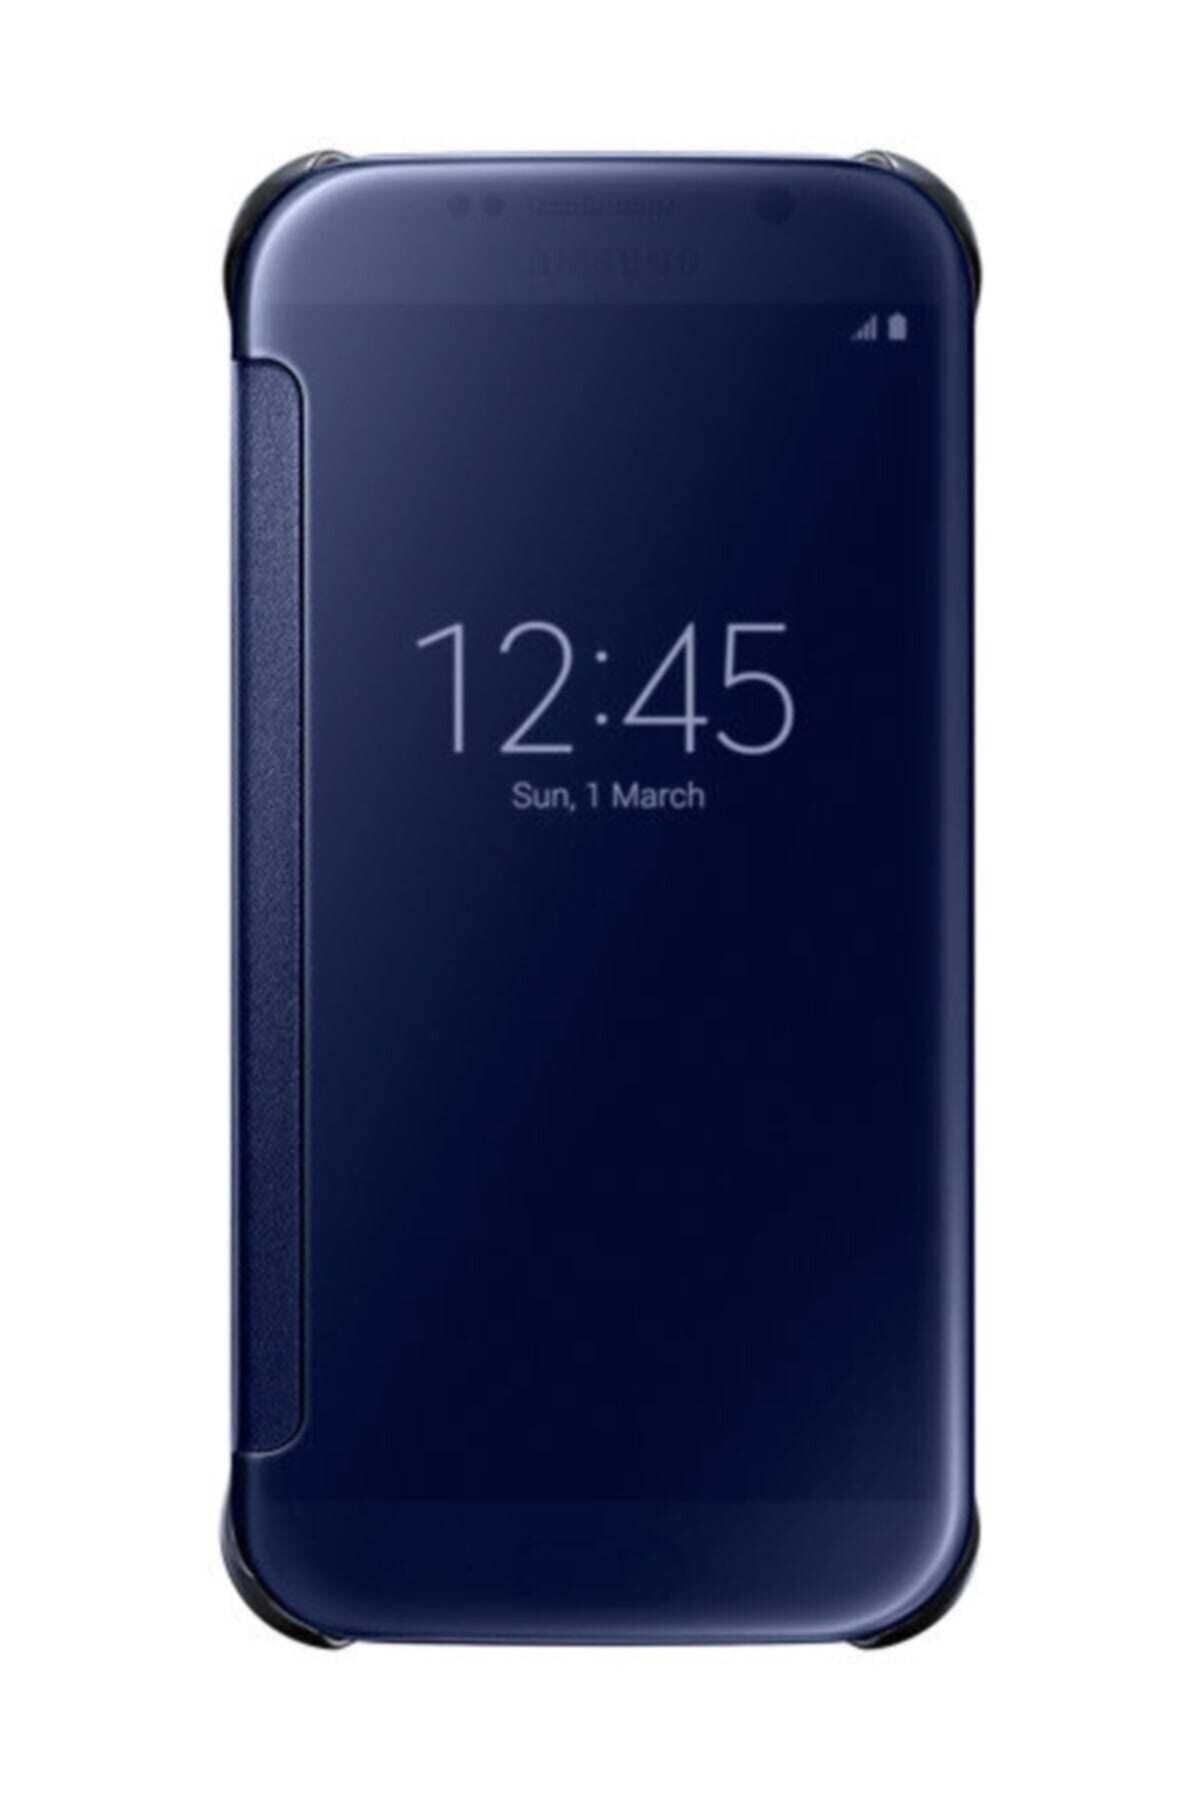 BANG & OLUFSEN Samsung Galaxy S6 Orjinal Clear View Cover - Siyah EF